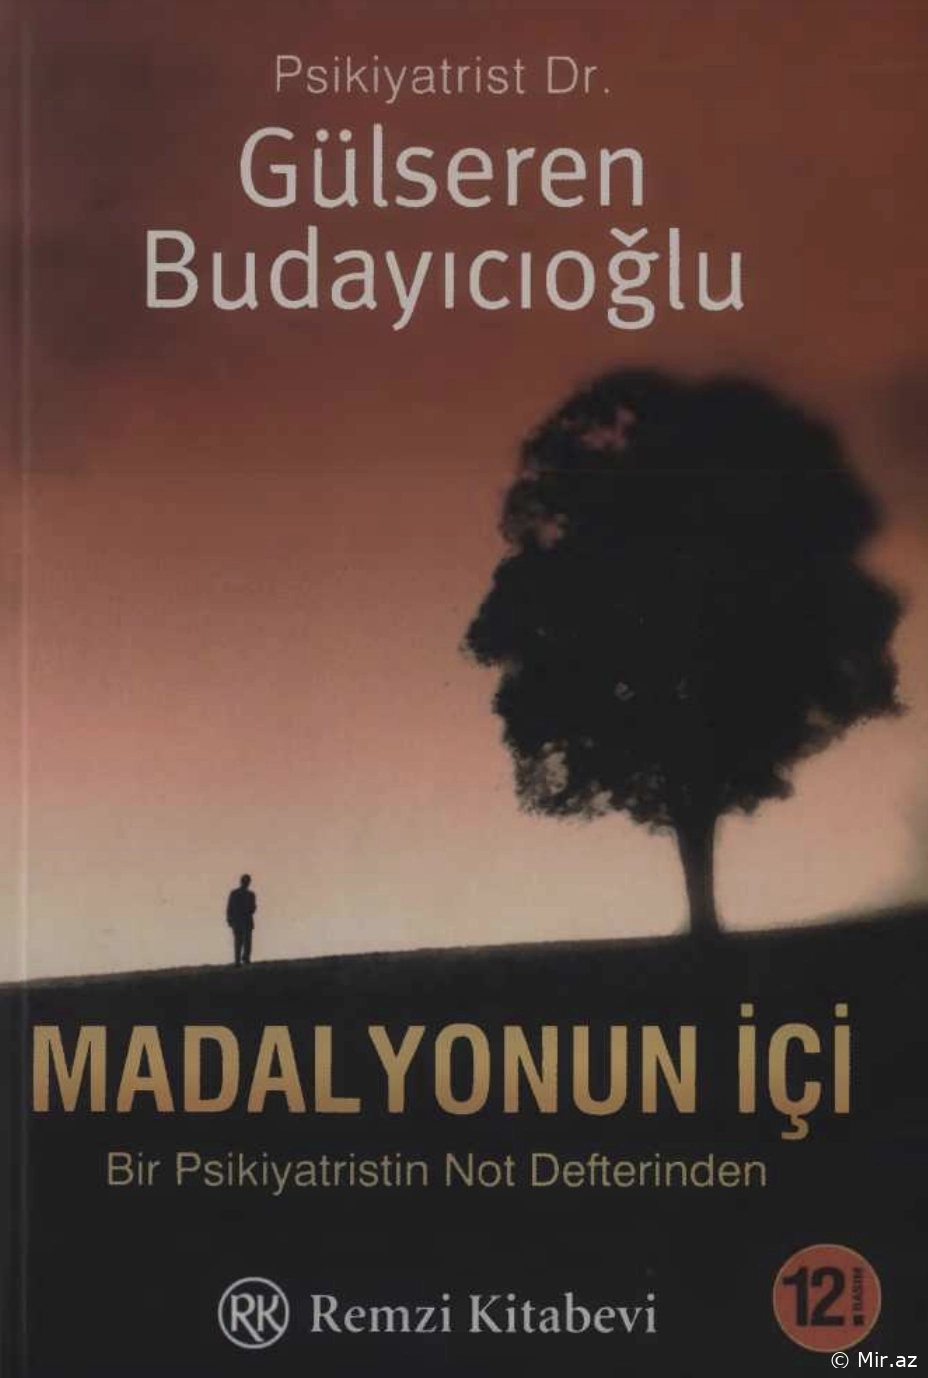 Gülseren Budayıcıoğlu "Madalyonun İçi" PDF